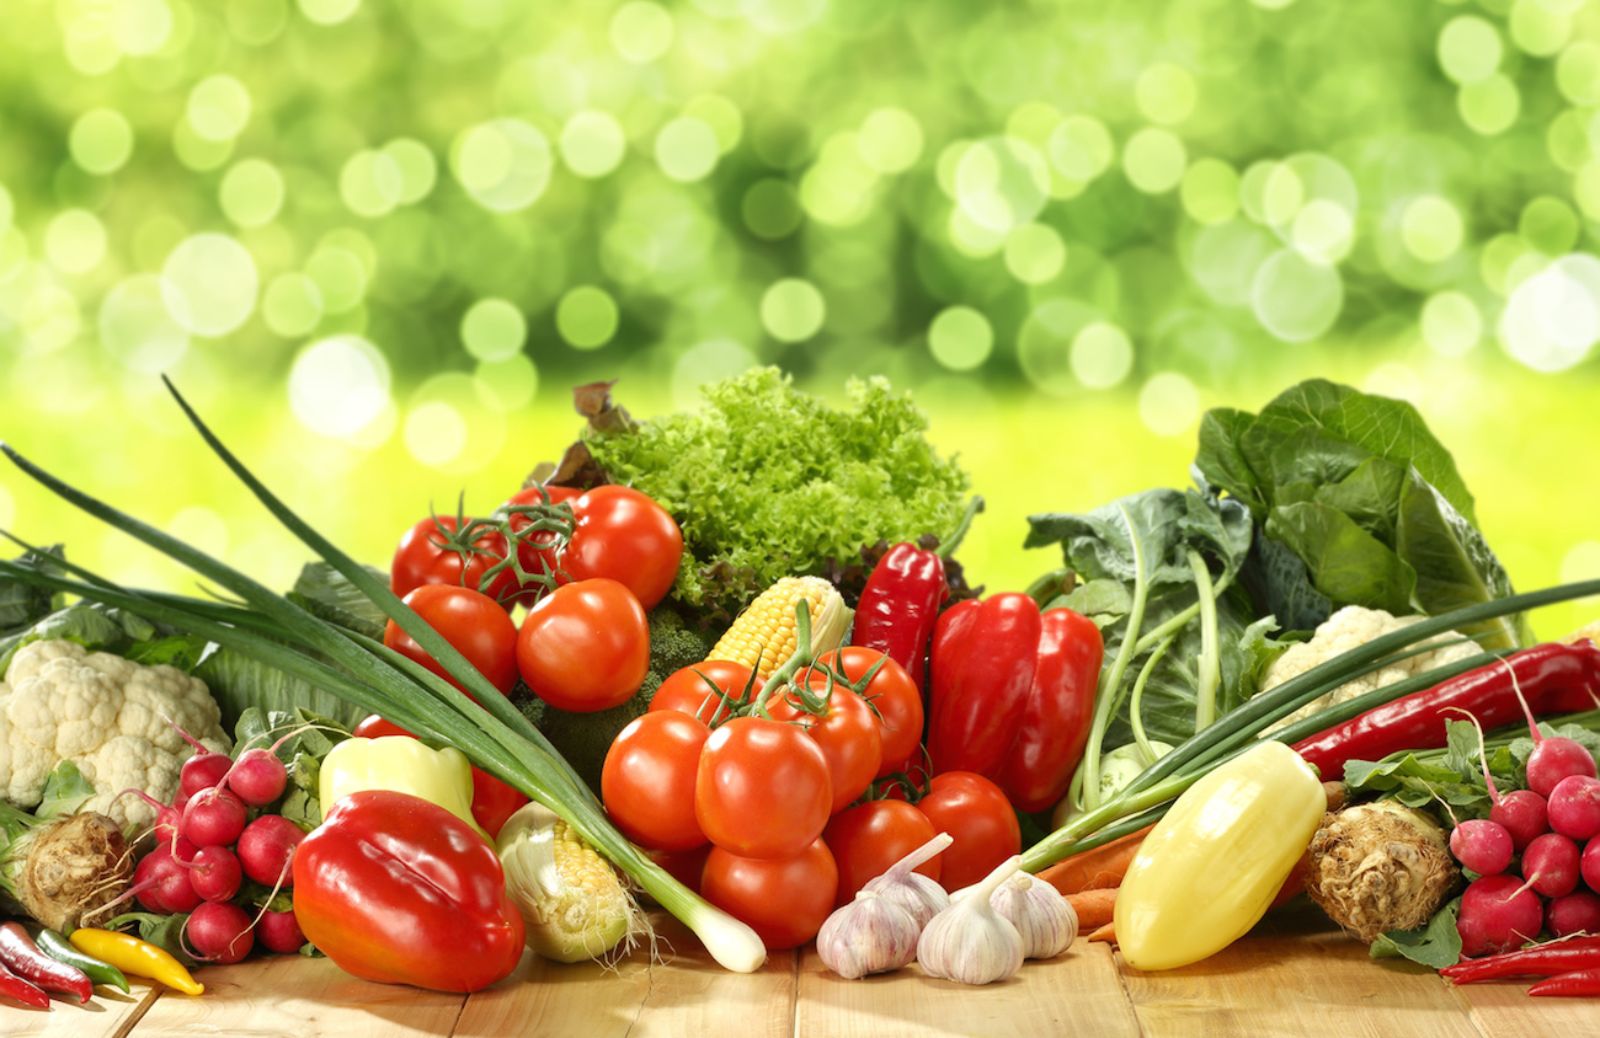 Come difendersi dalle allergie alimentari in estate: attenzione a frutta e verdura crude